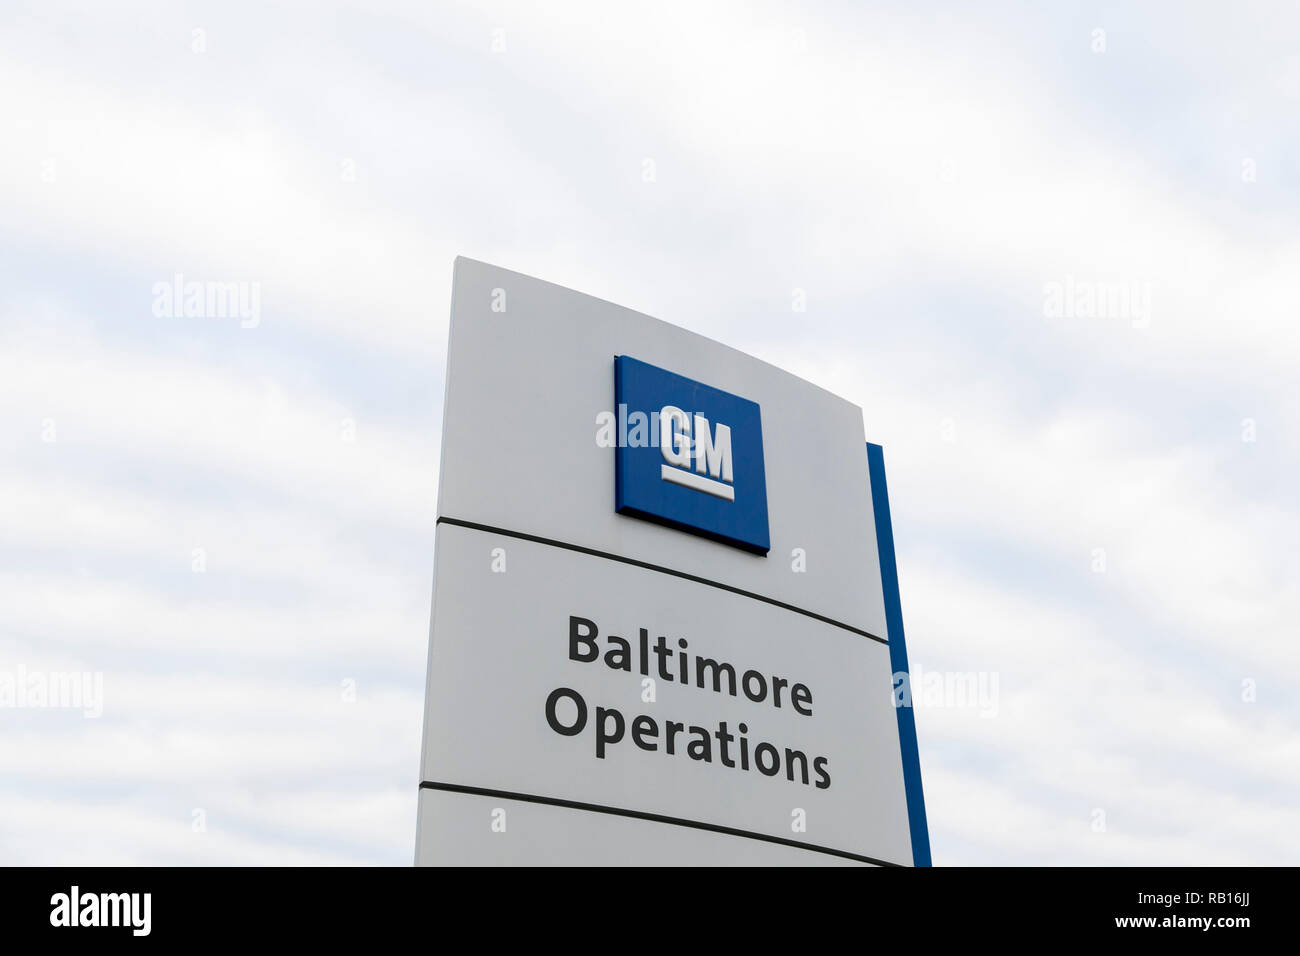 Ein logo Zeichen außerhalb des General Motors (GM) Baltimore Operationen Werk in White Marsh, Maryland, am 23. Dezember 2018. Stockfoto